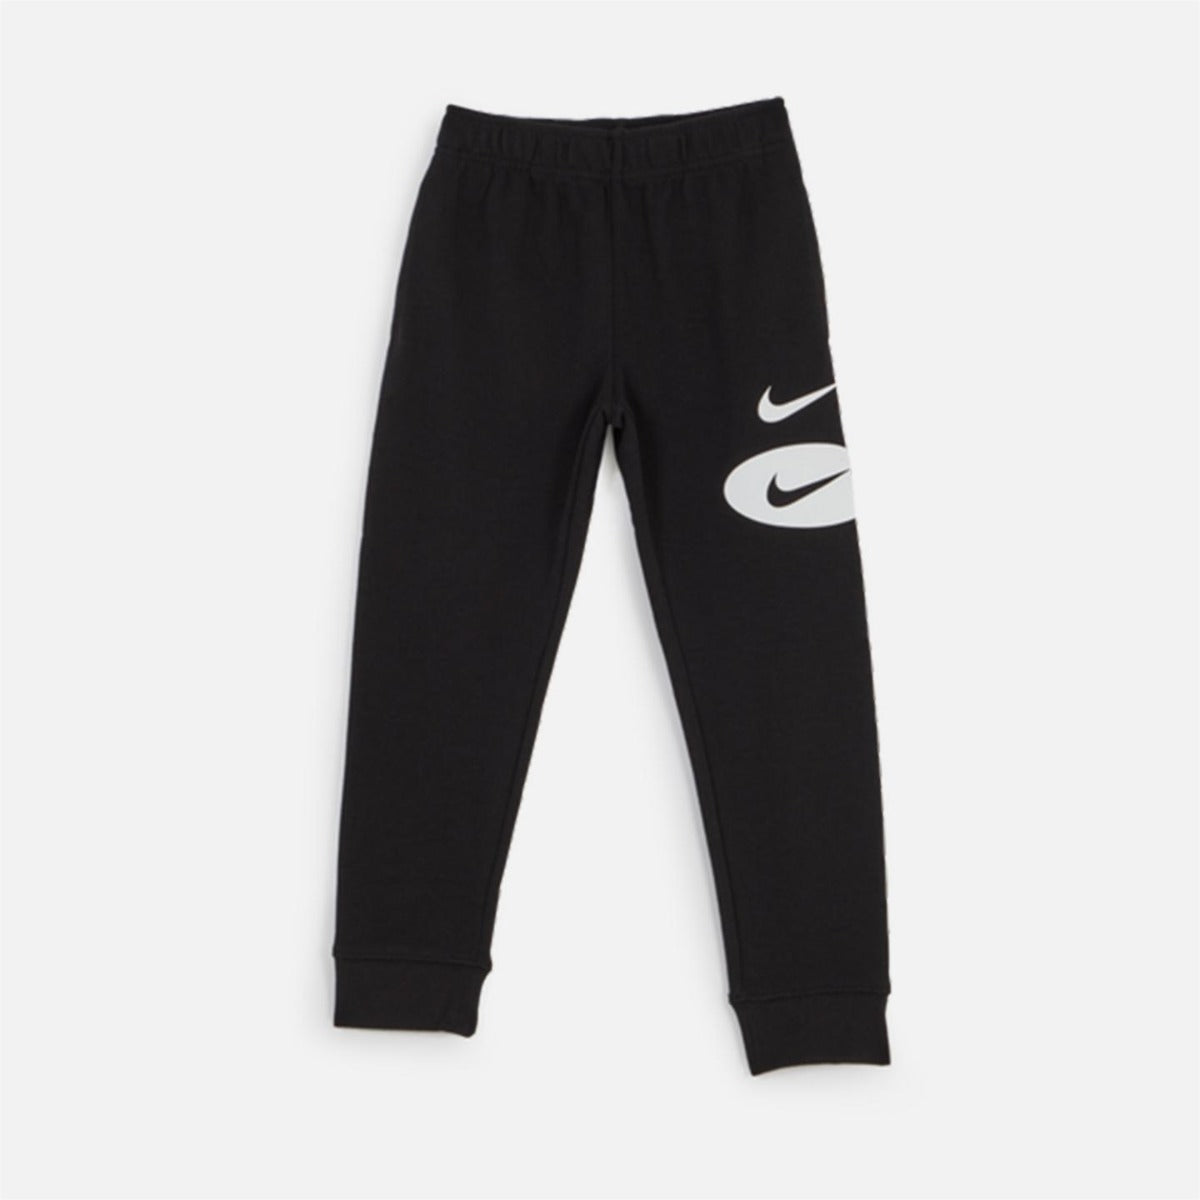 Pantalones Nike Sportswear Niños - Negro/Blanco